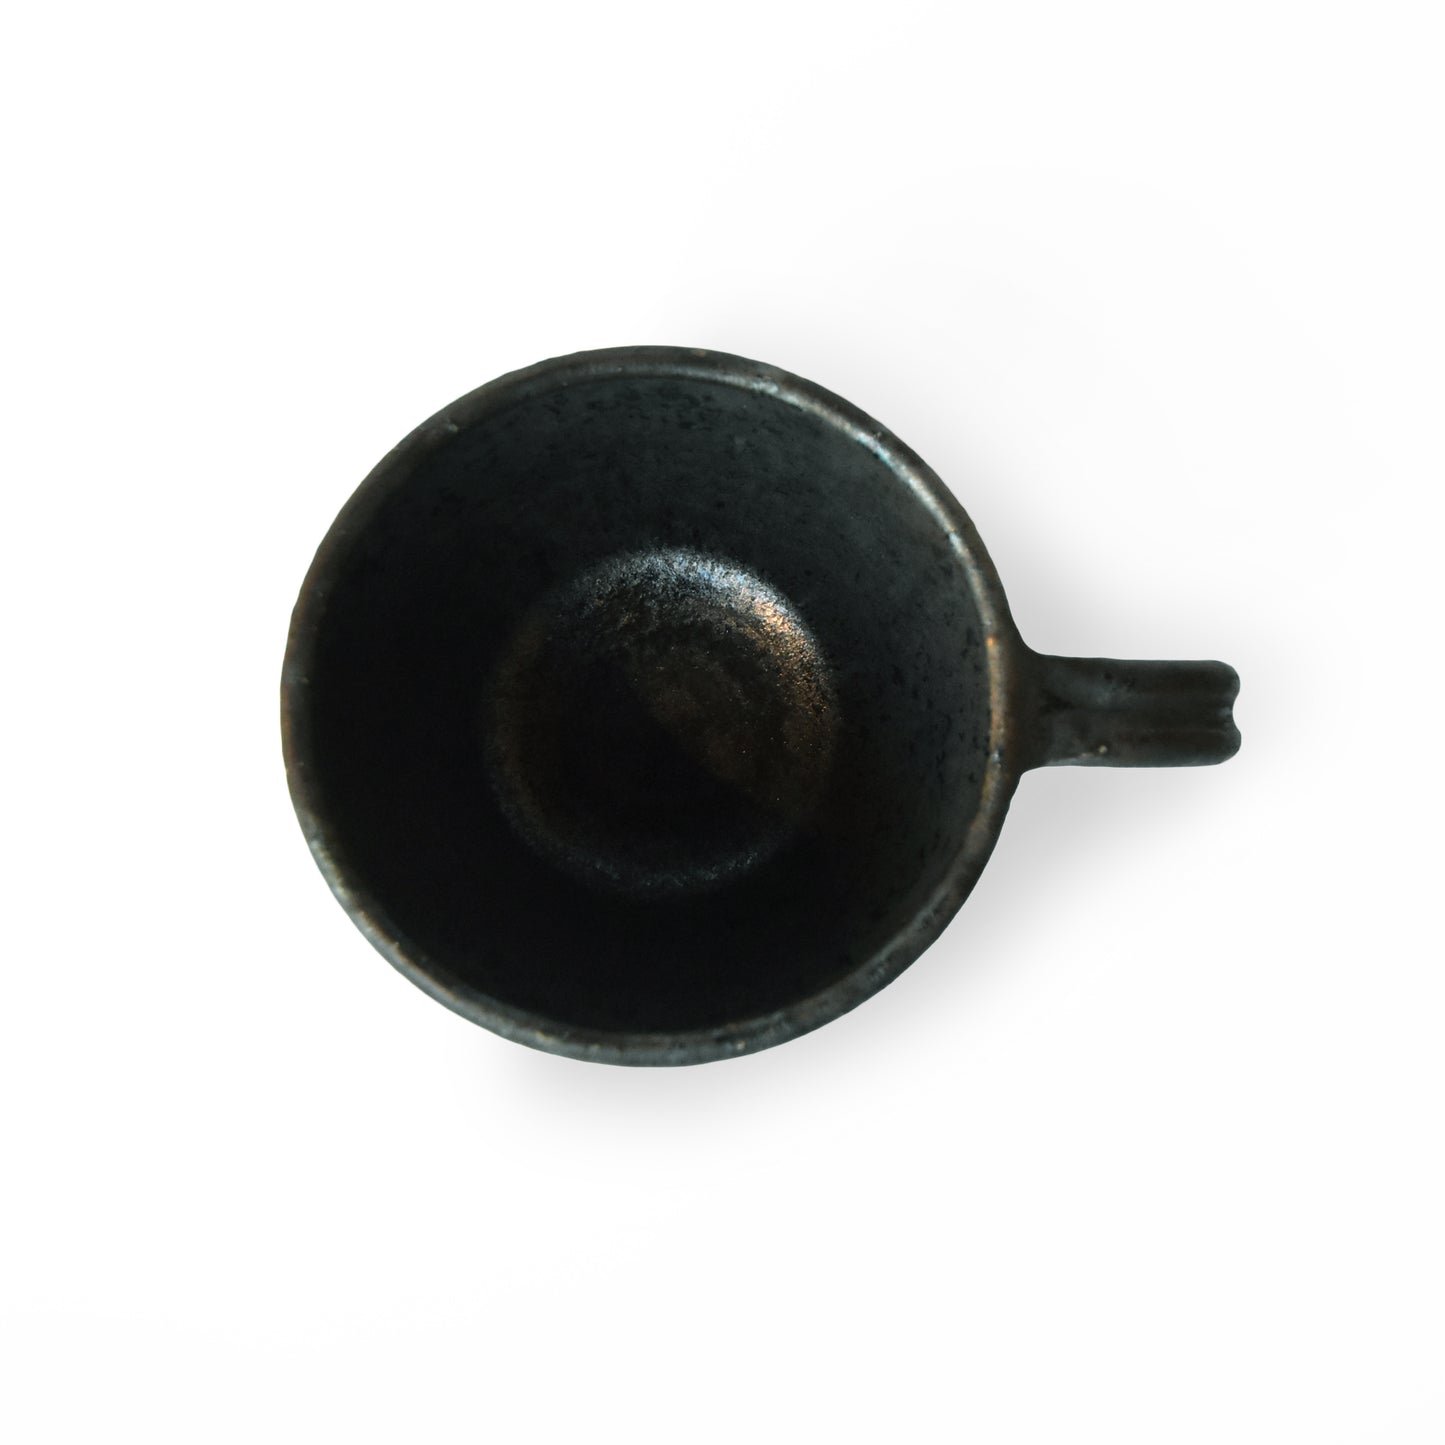 Shohei Ono16 Black Glaze Mug Cup